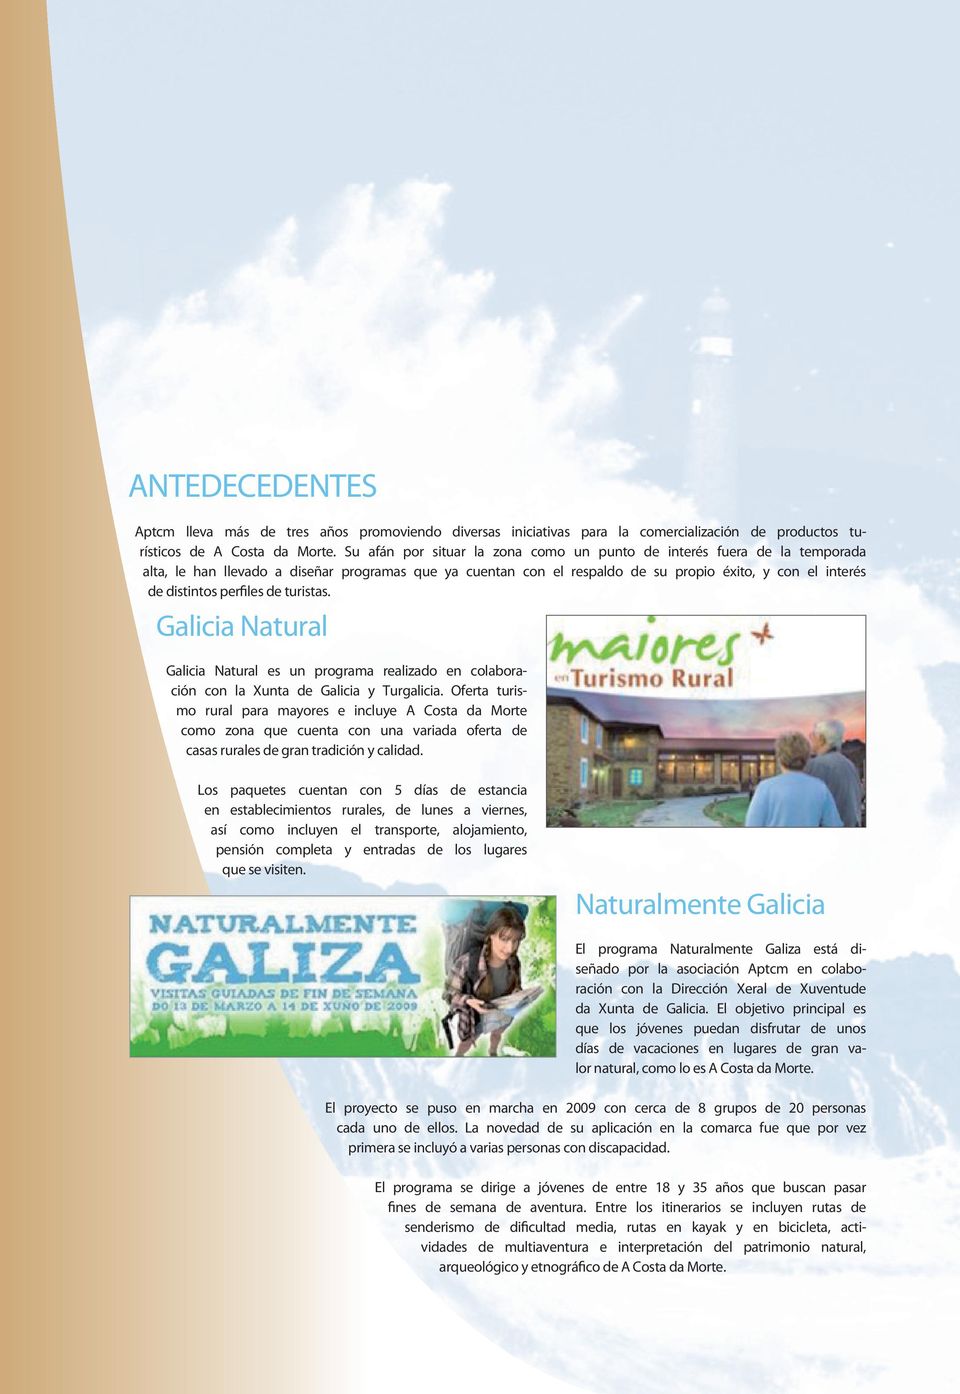 perfiles de turistas. Galicia Natural Galicia Natural es un programa realizado en colaboración con la Xunta de Galicia y Turgalicia.